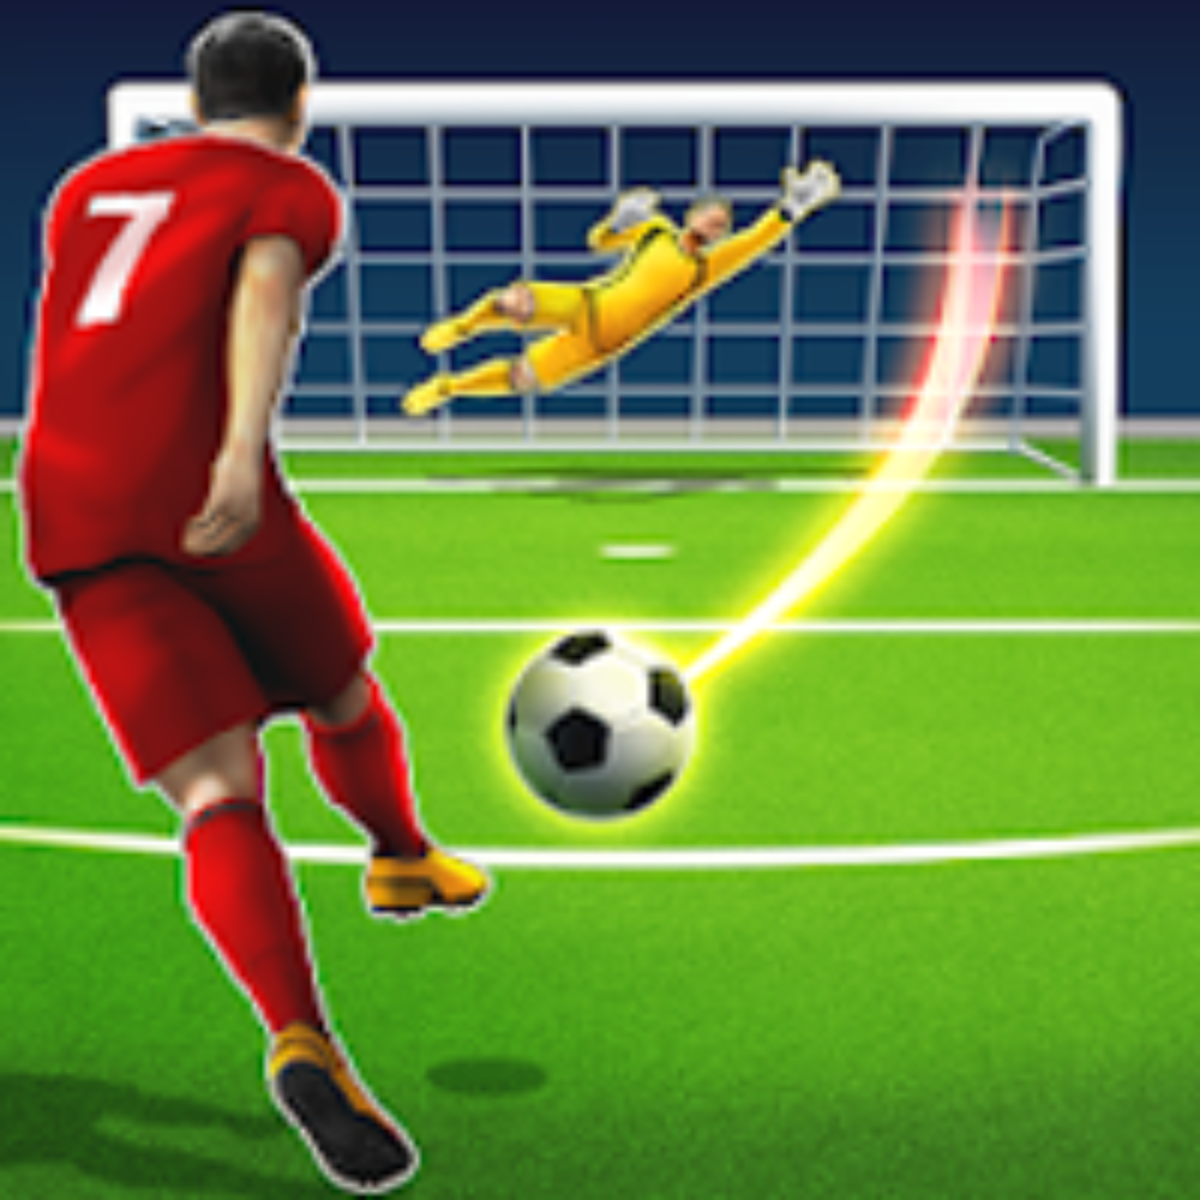 Baixar Head Soccer Mod Apk v6.18.1 (Dinheiro Ilimitado)